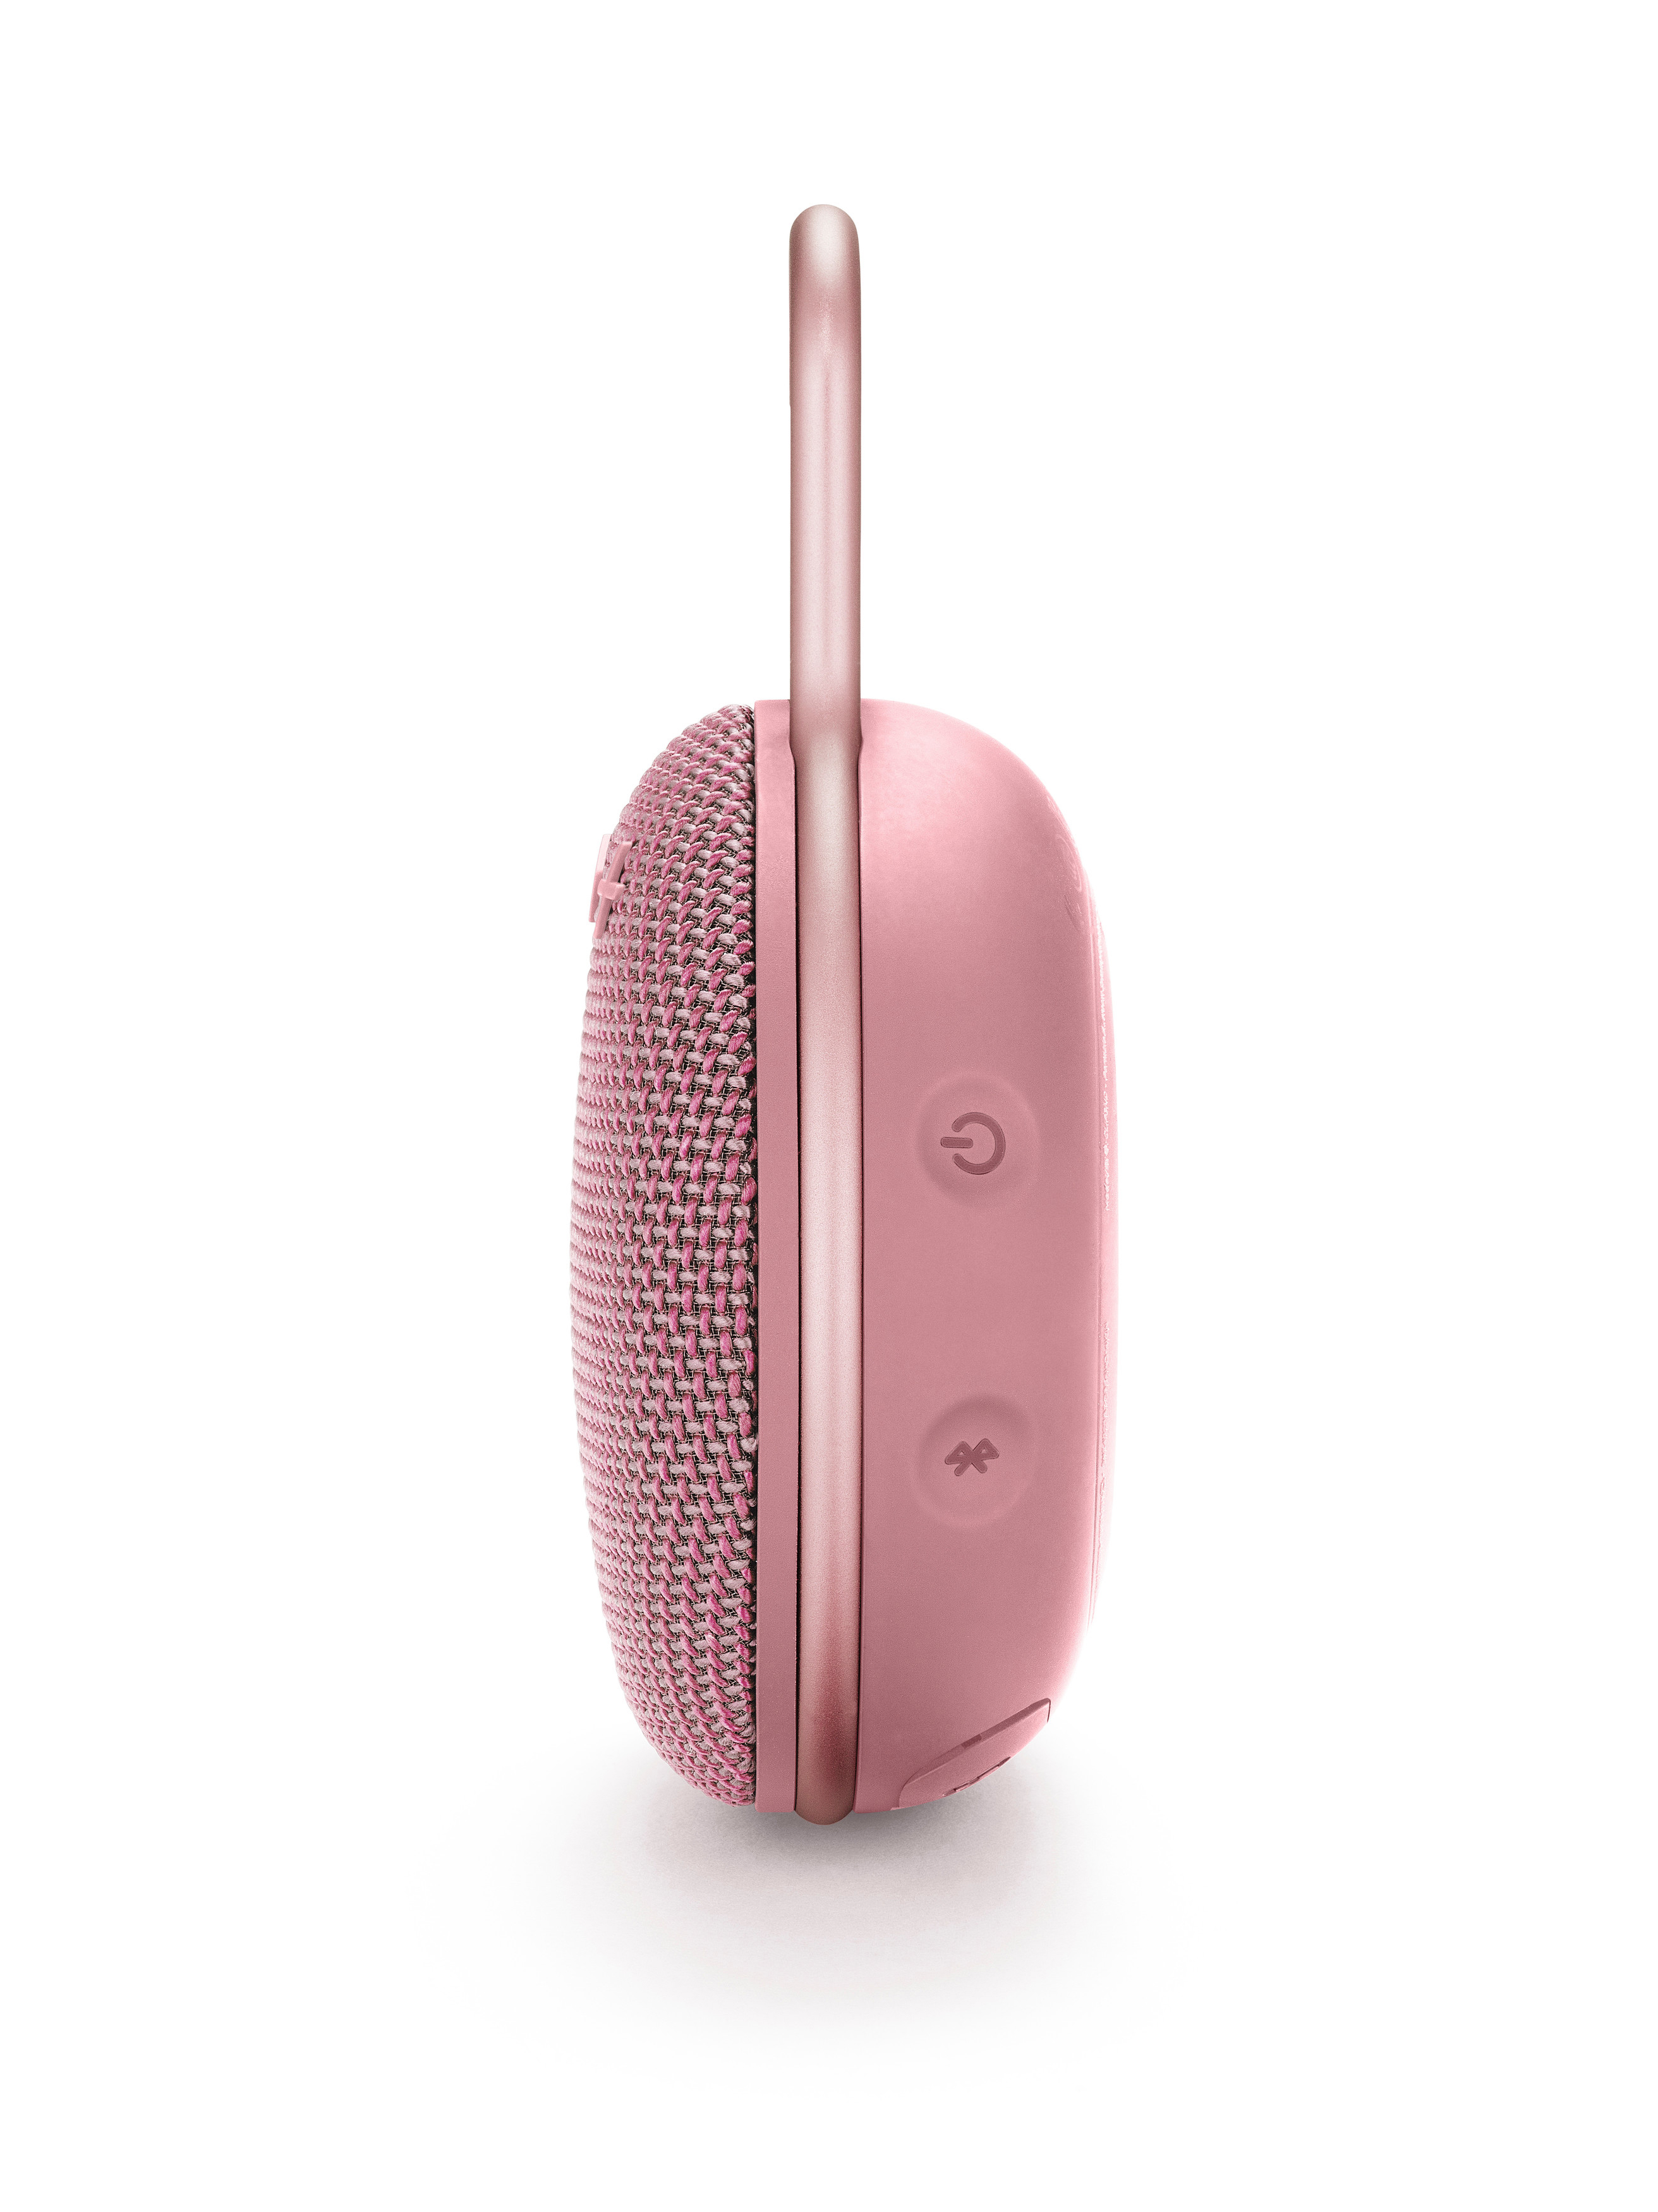 JBL Clip 3 Bluetooth Lautsprecher, Wasserfest Pink